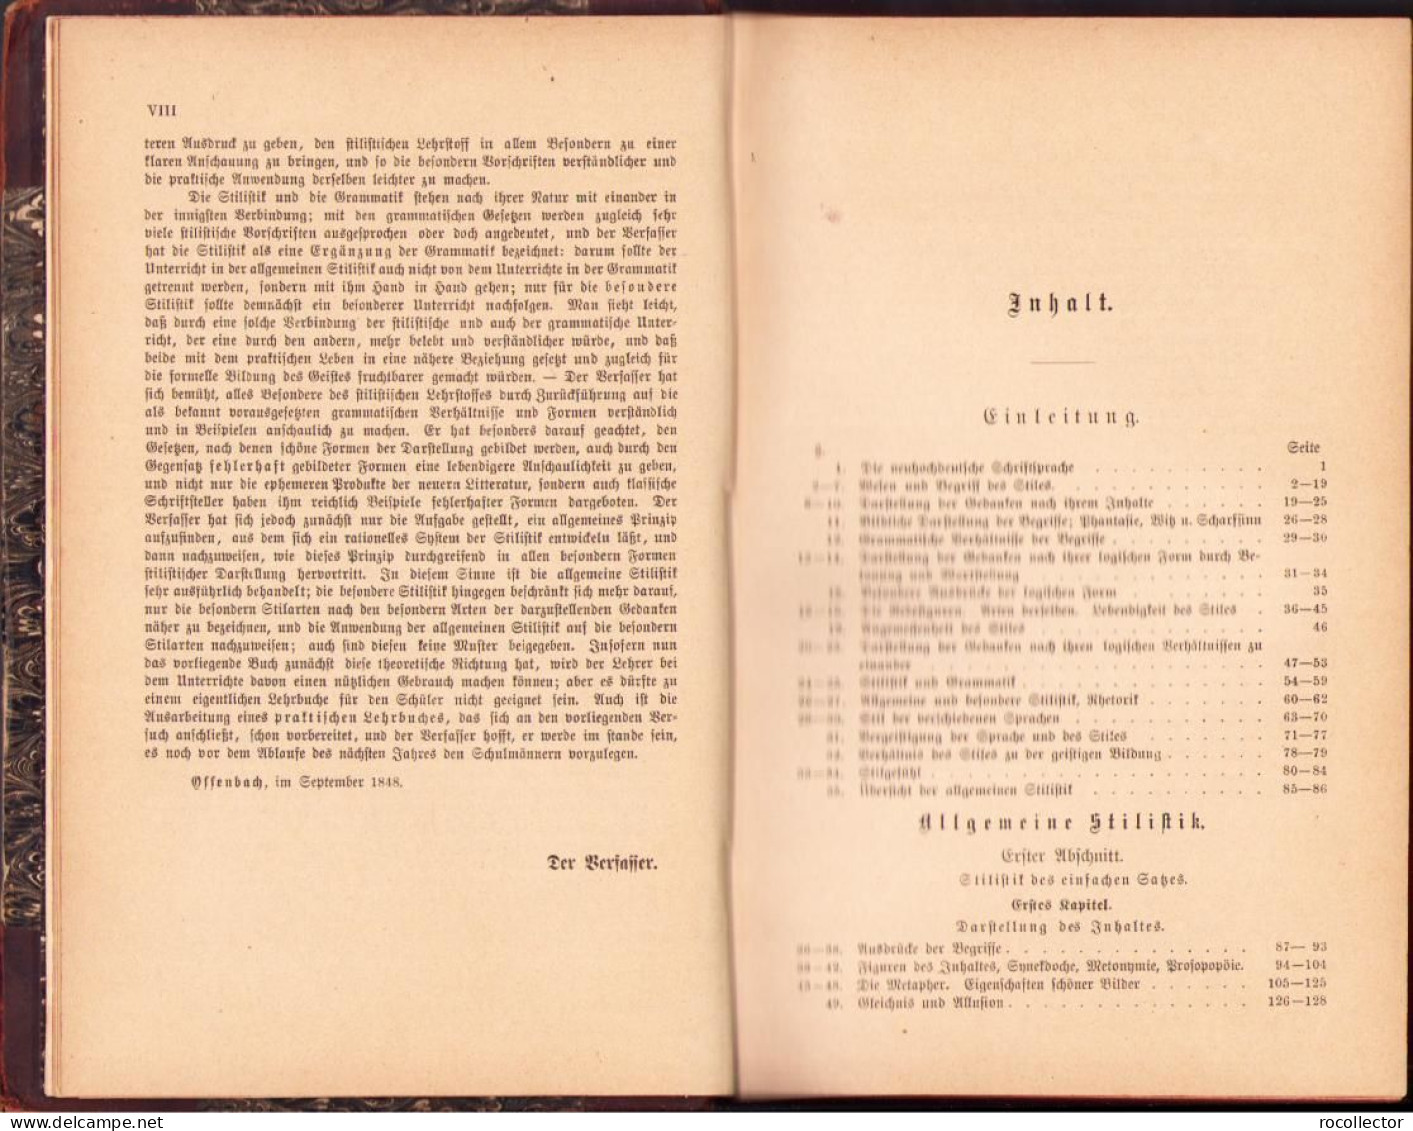 Der Deutsche Stil Von Karl Ferdinand Becker, 1884 C1599 - Oude Boeken